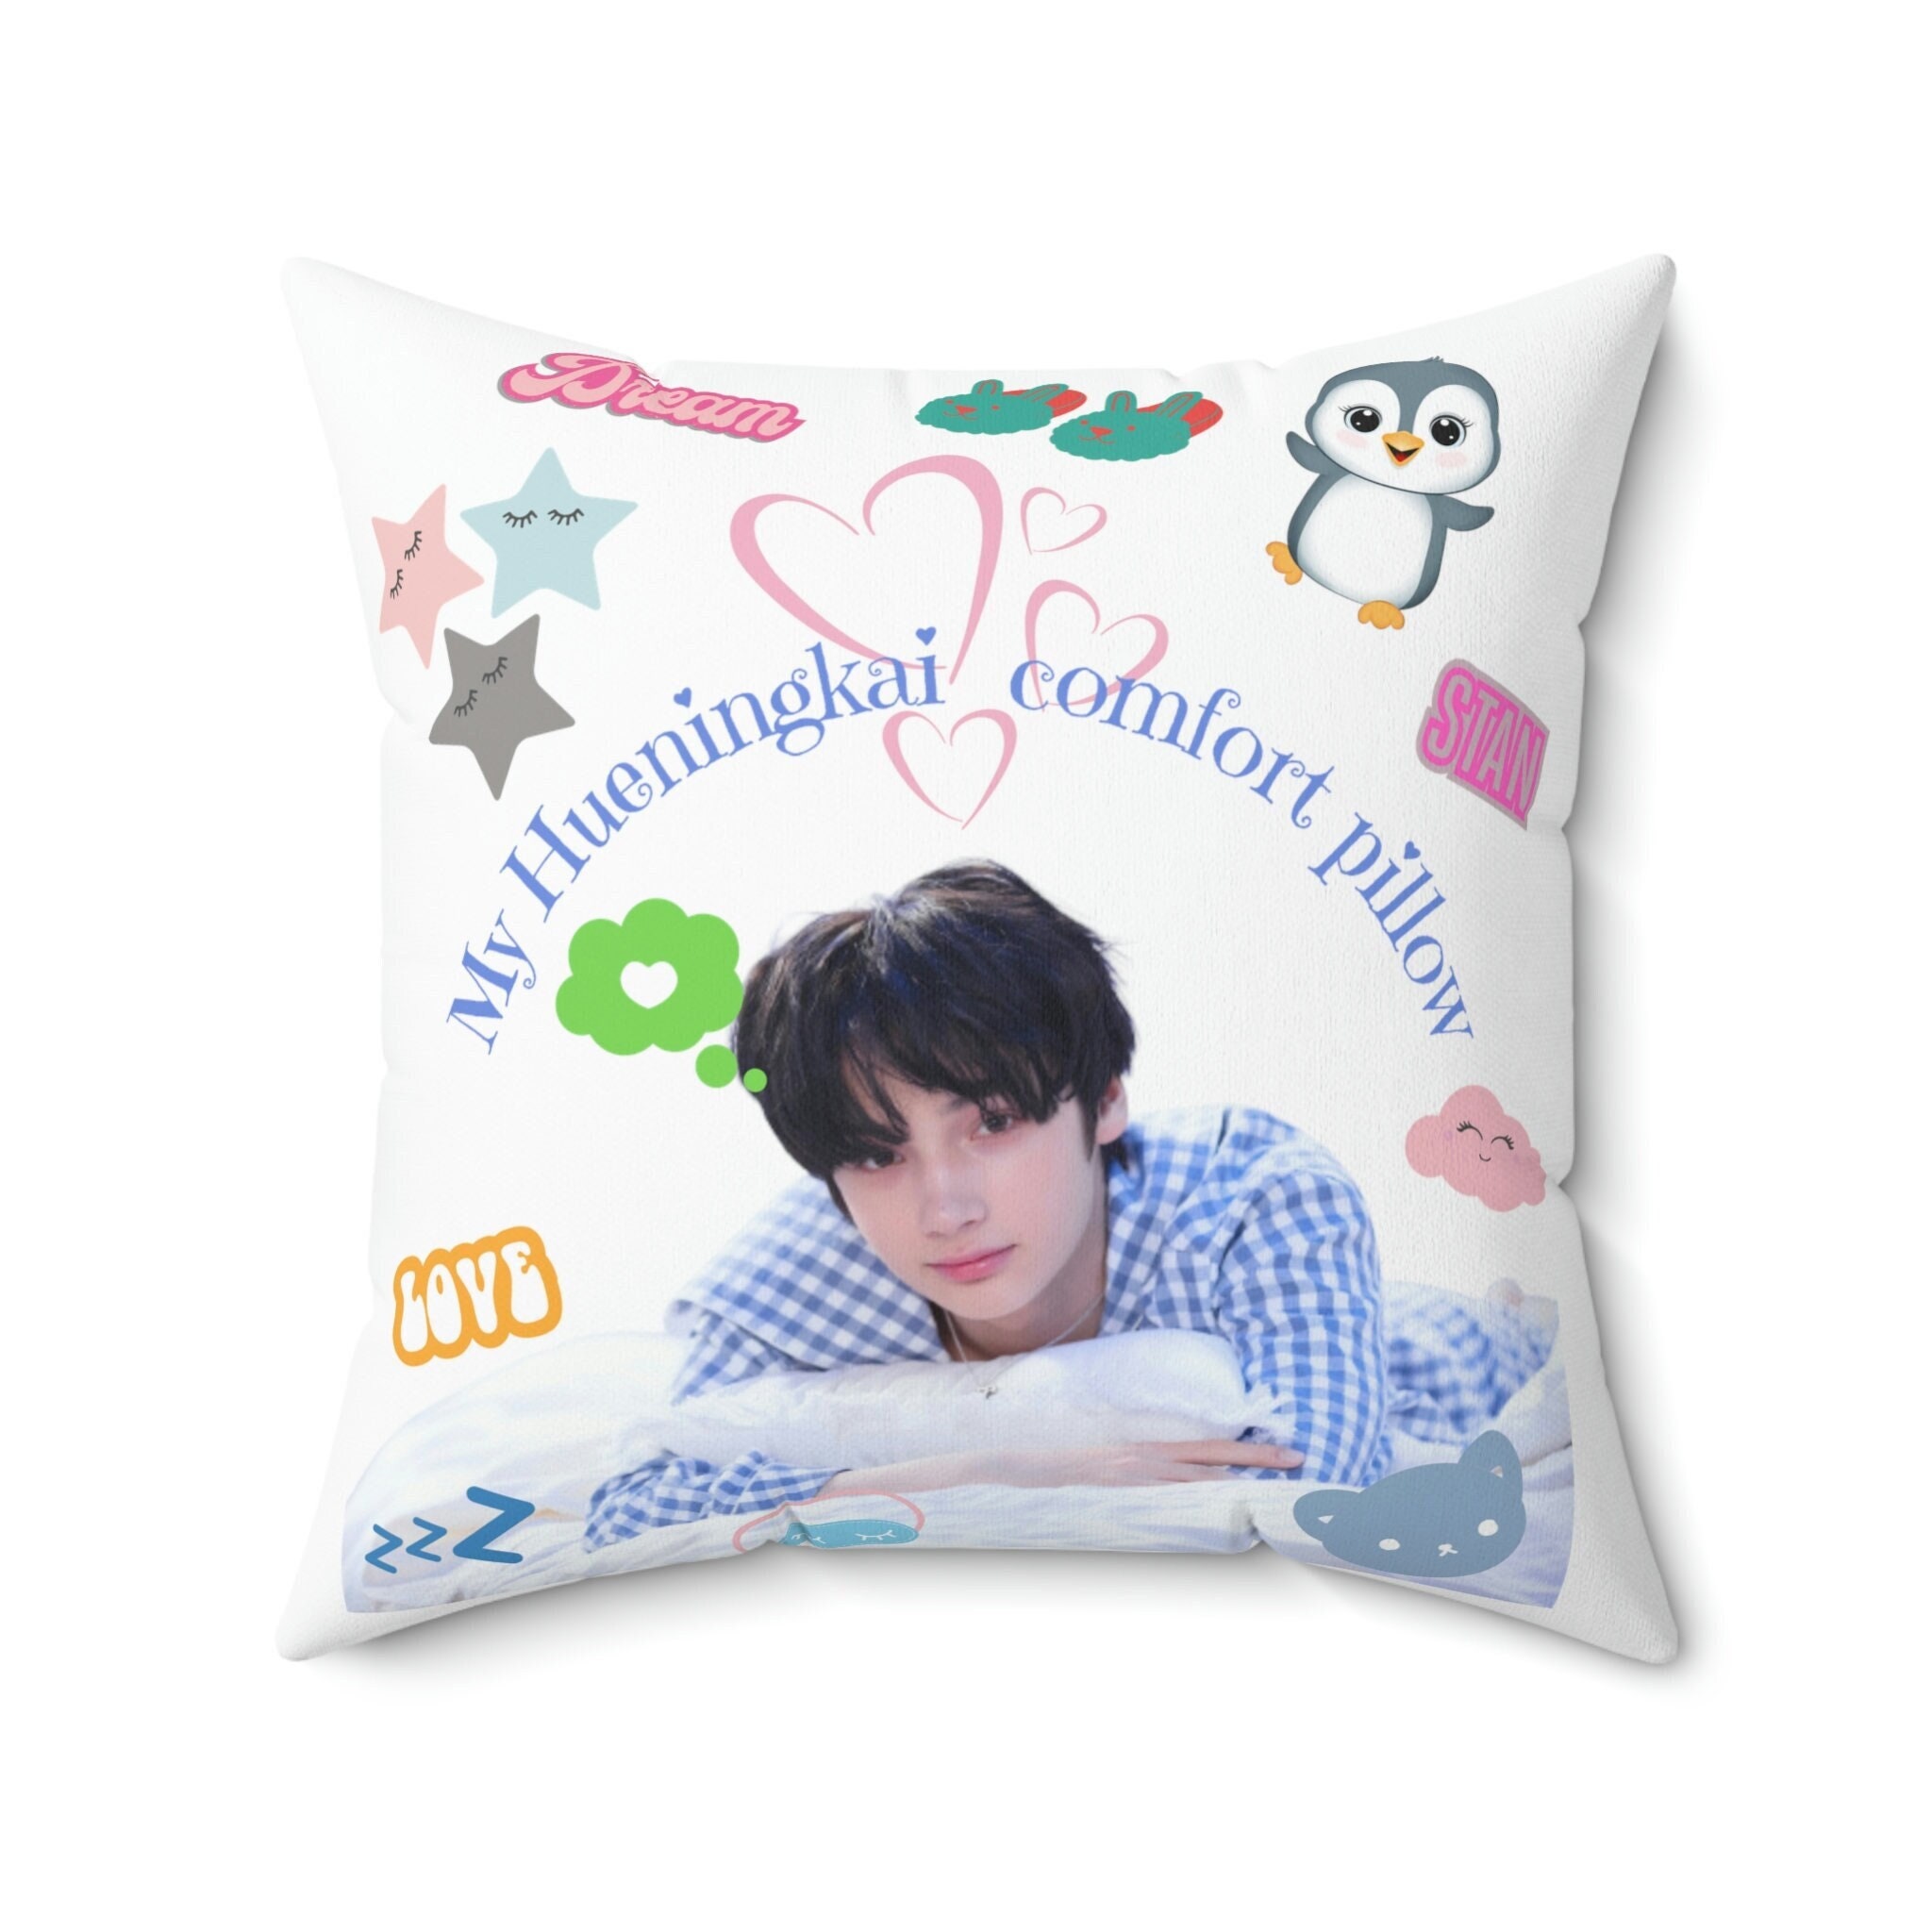 Home Cushion Cover, Photo Pillowcase, Zip Decor, Taekook